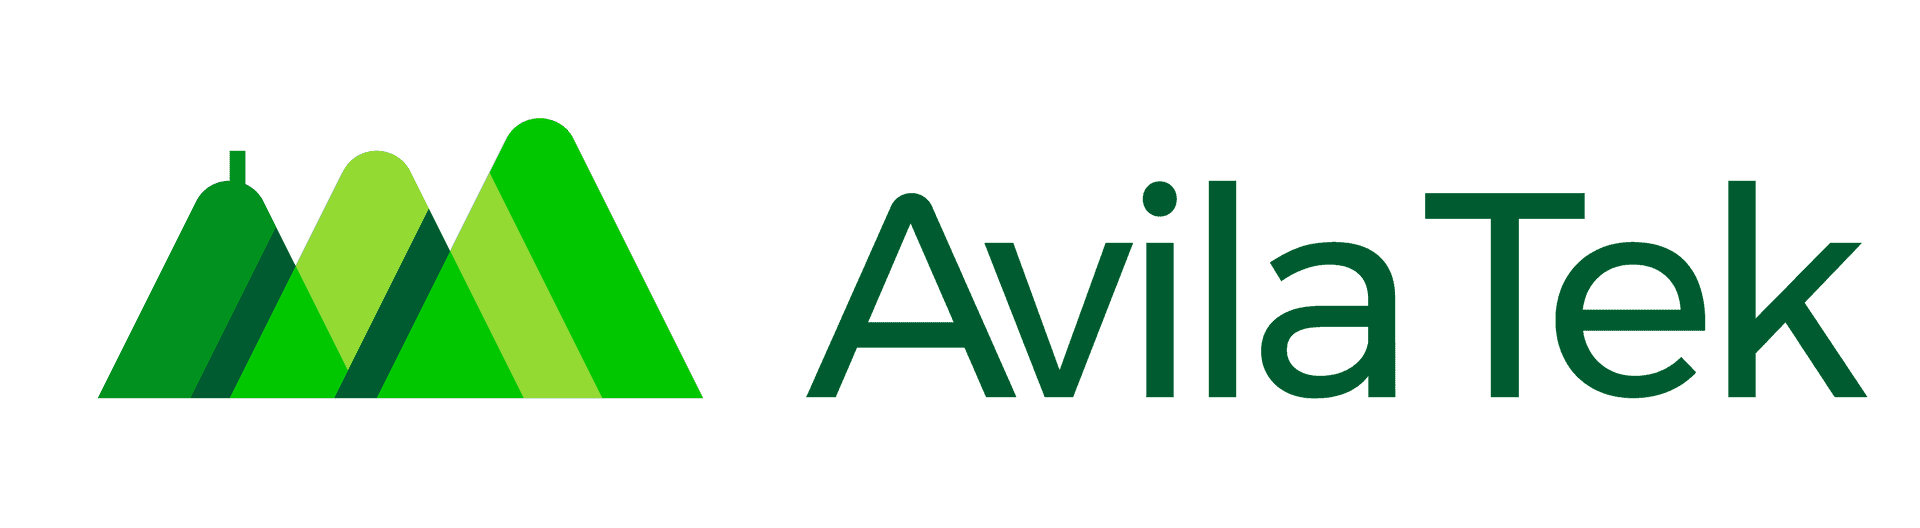 Avila Tek logo